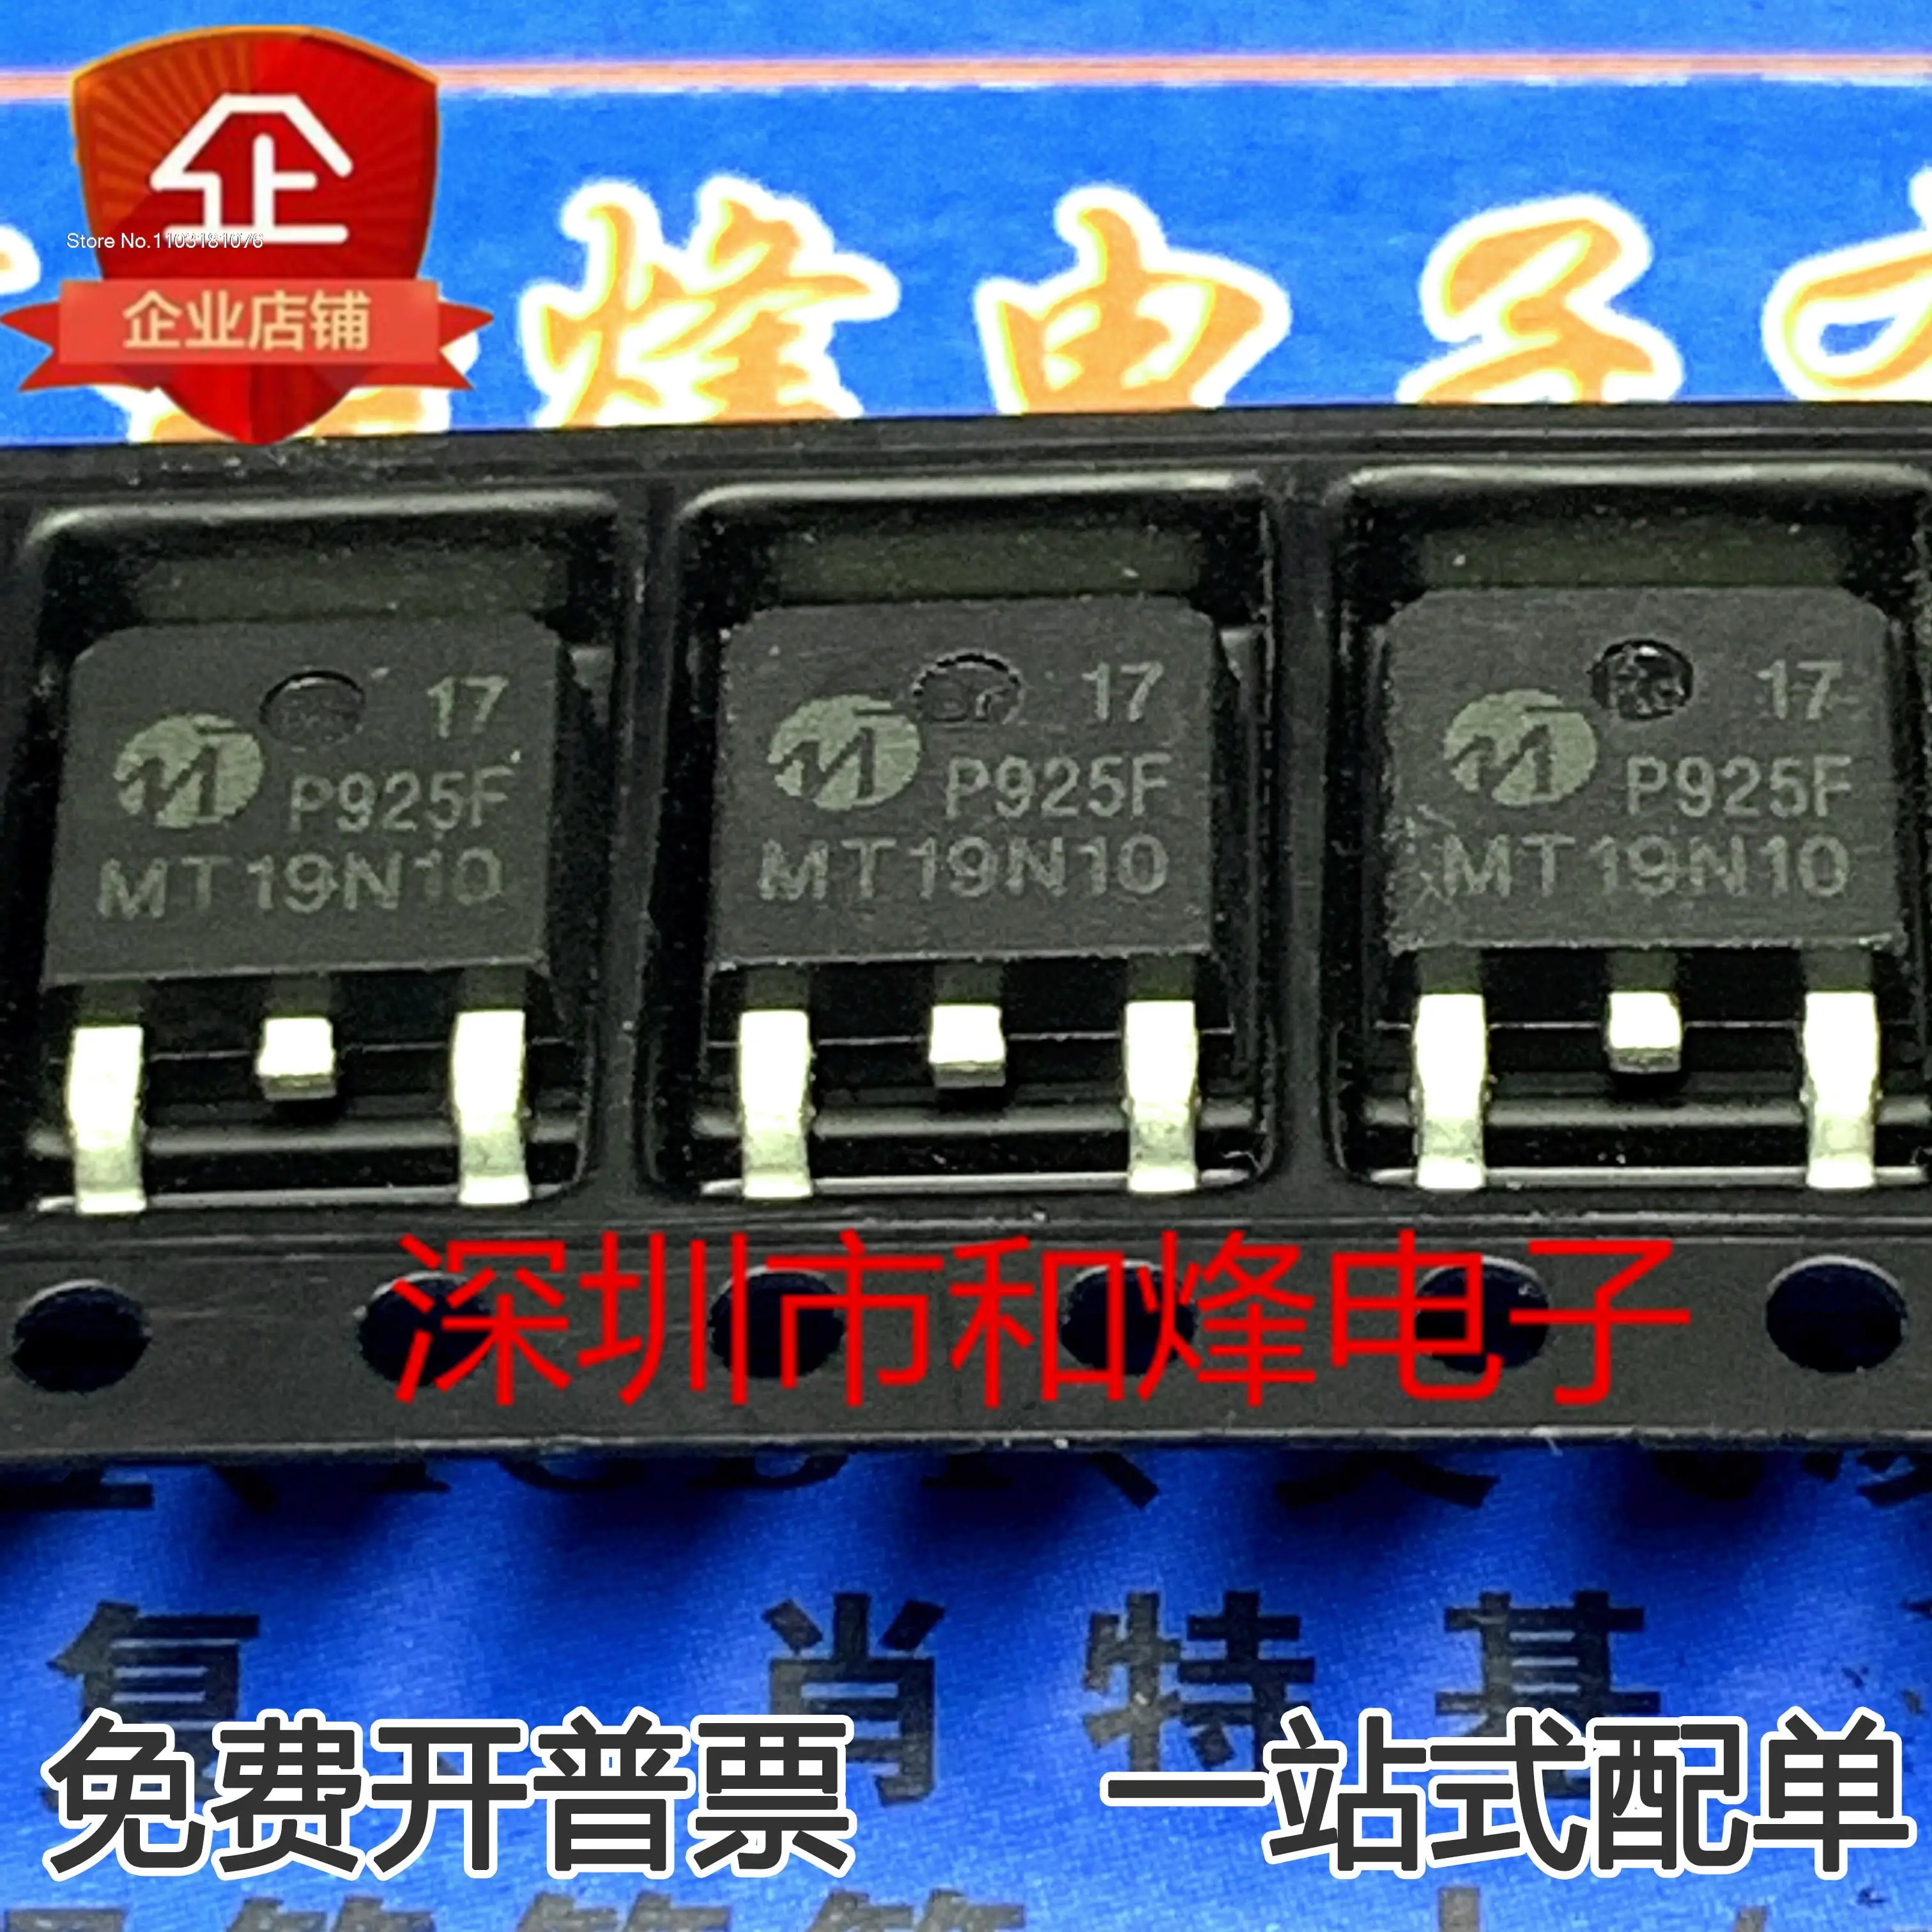 (20 шт./ЛОТ) MT19N10 MOS 100V 15.6A TO-252 19N10 Новый оригинальный чип питания на складе